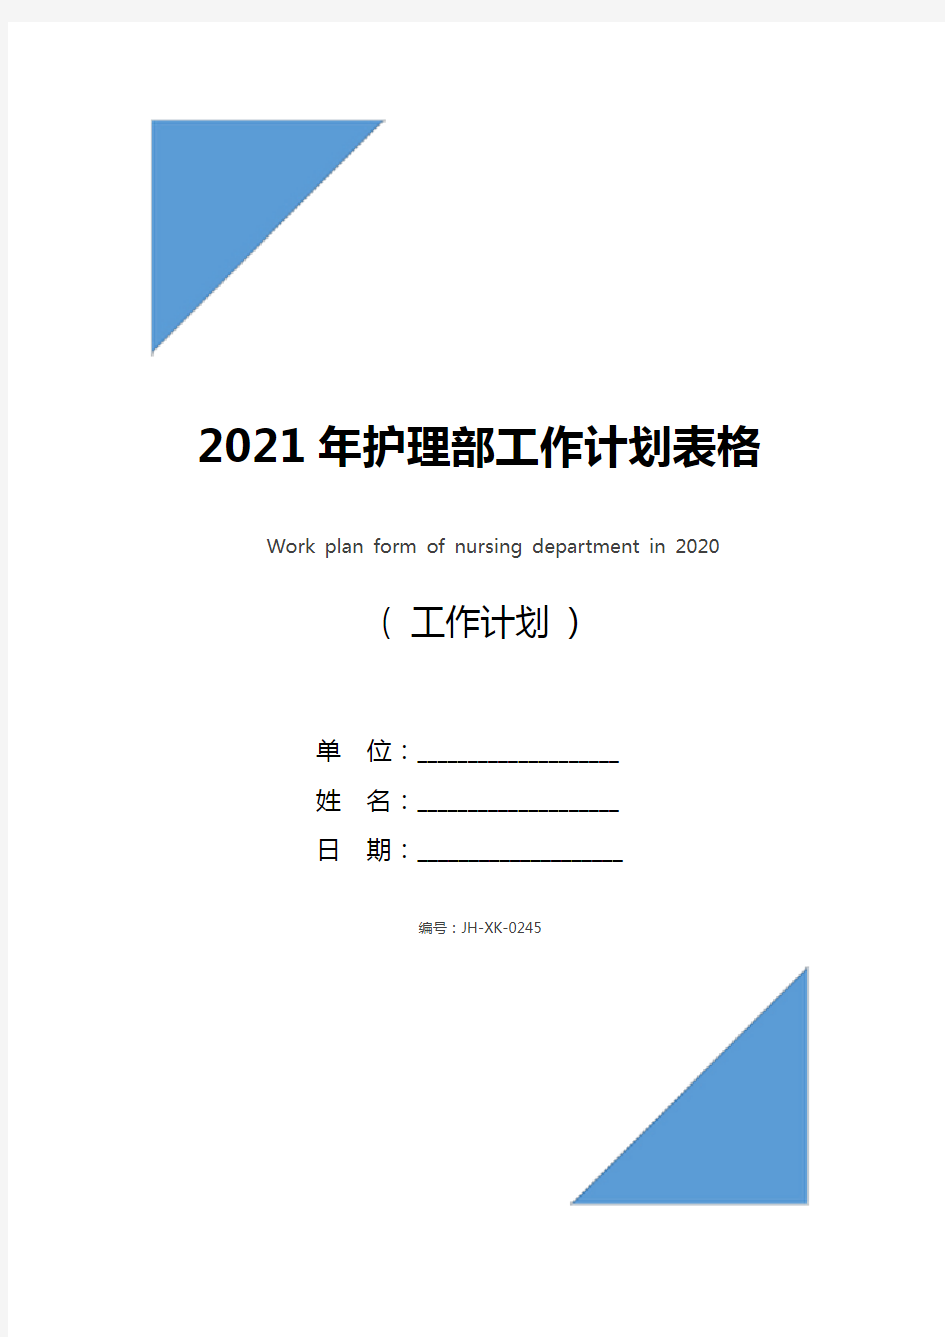 2021年护理部工作计划表格(通用版)